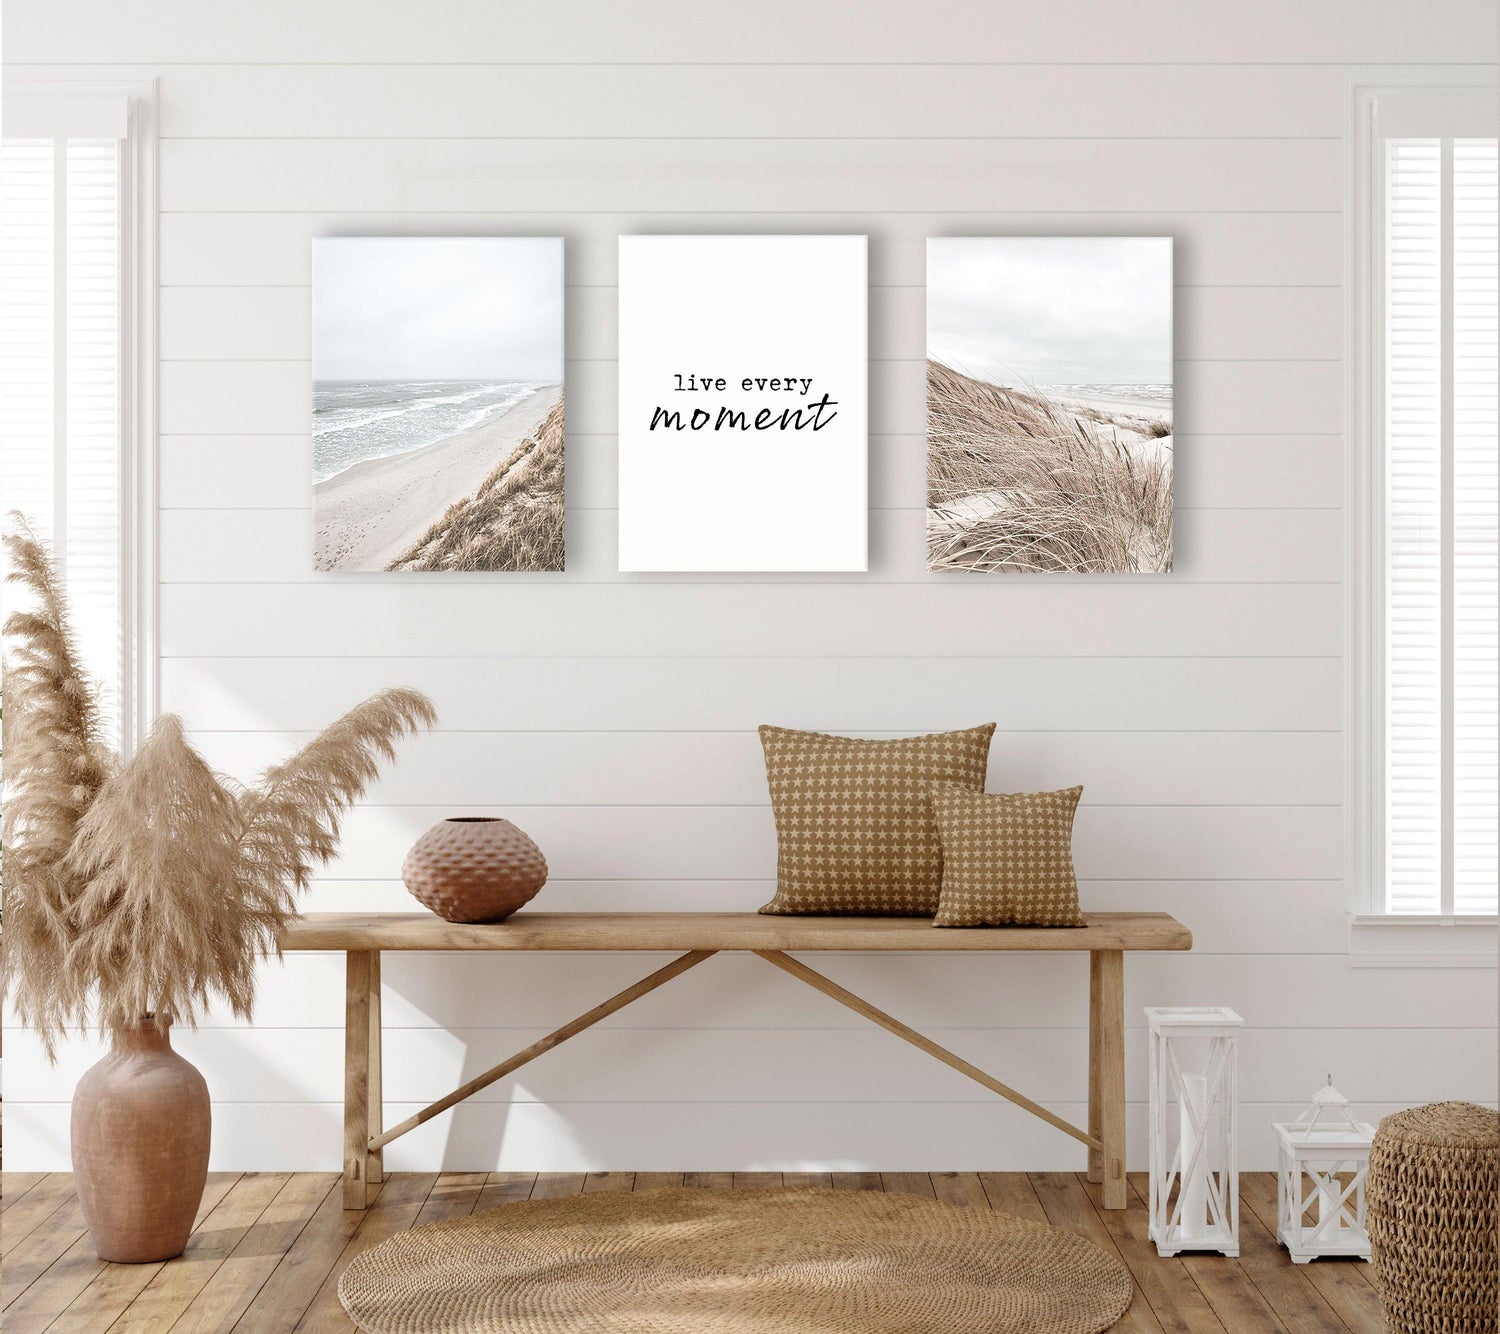 3 teiliges leinwand bilder set strand meer  -  Reframed Poster Sets